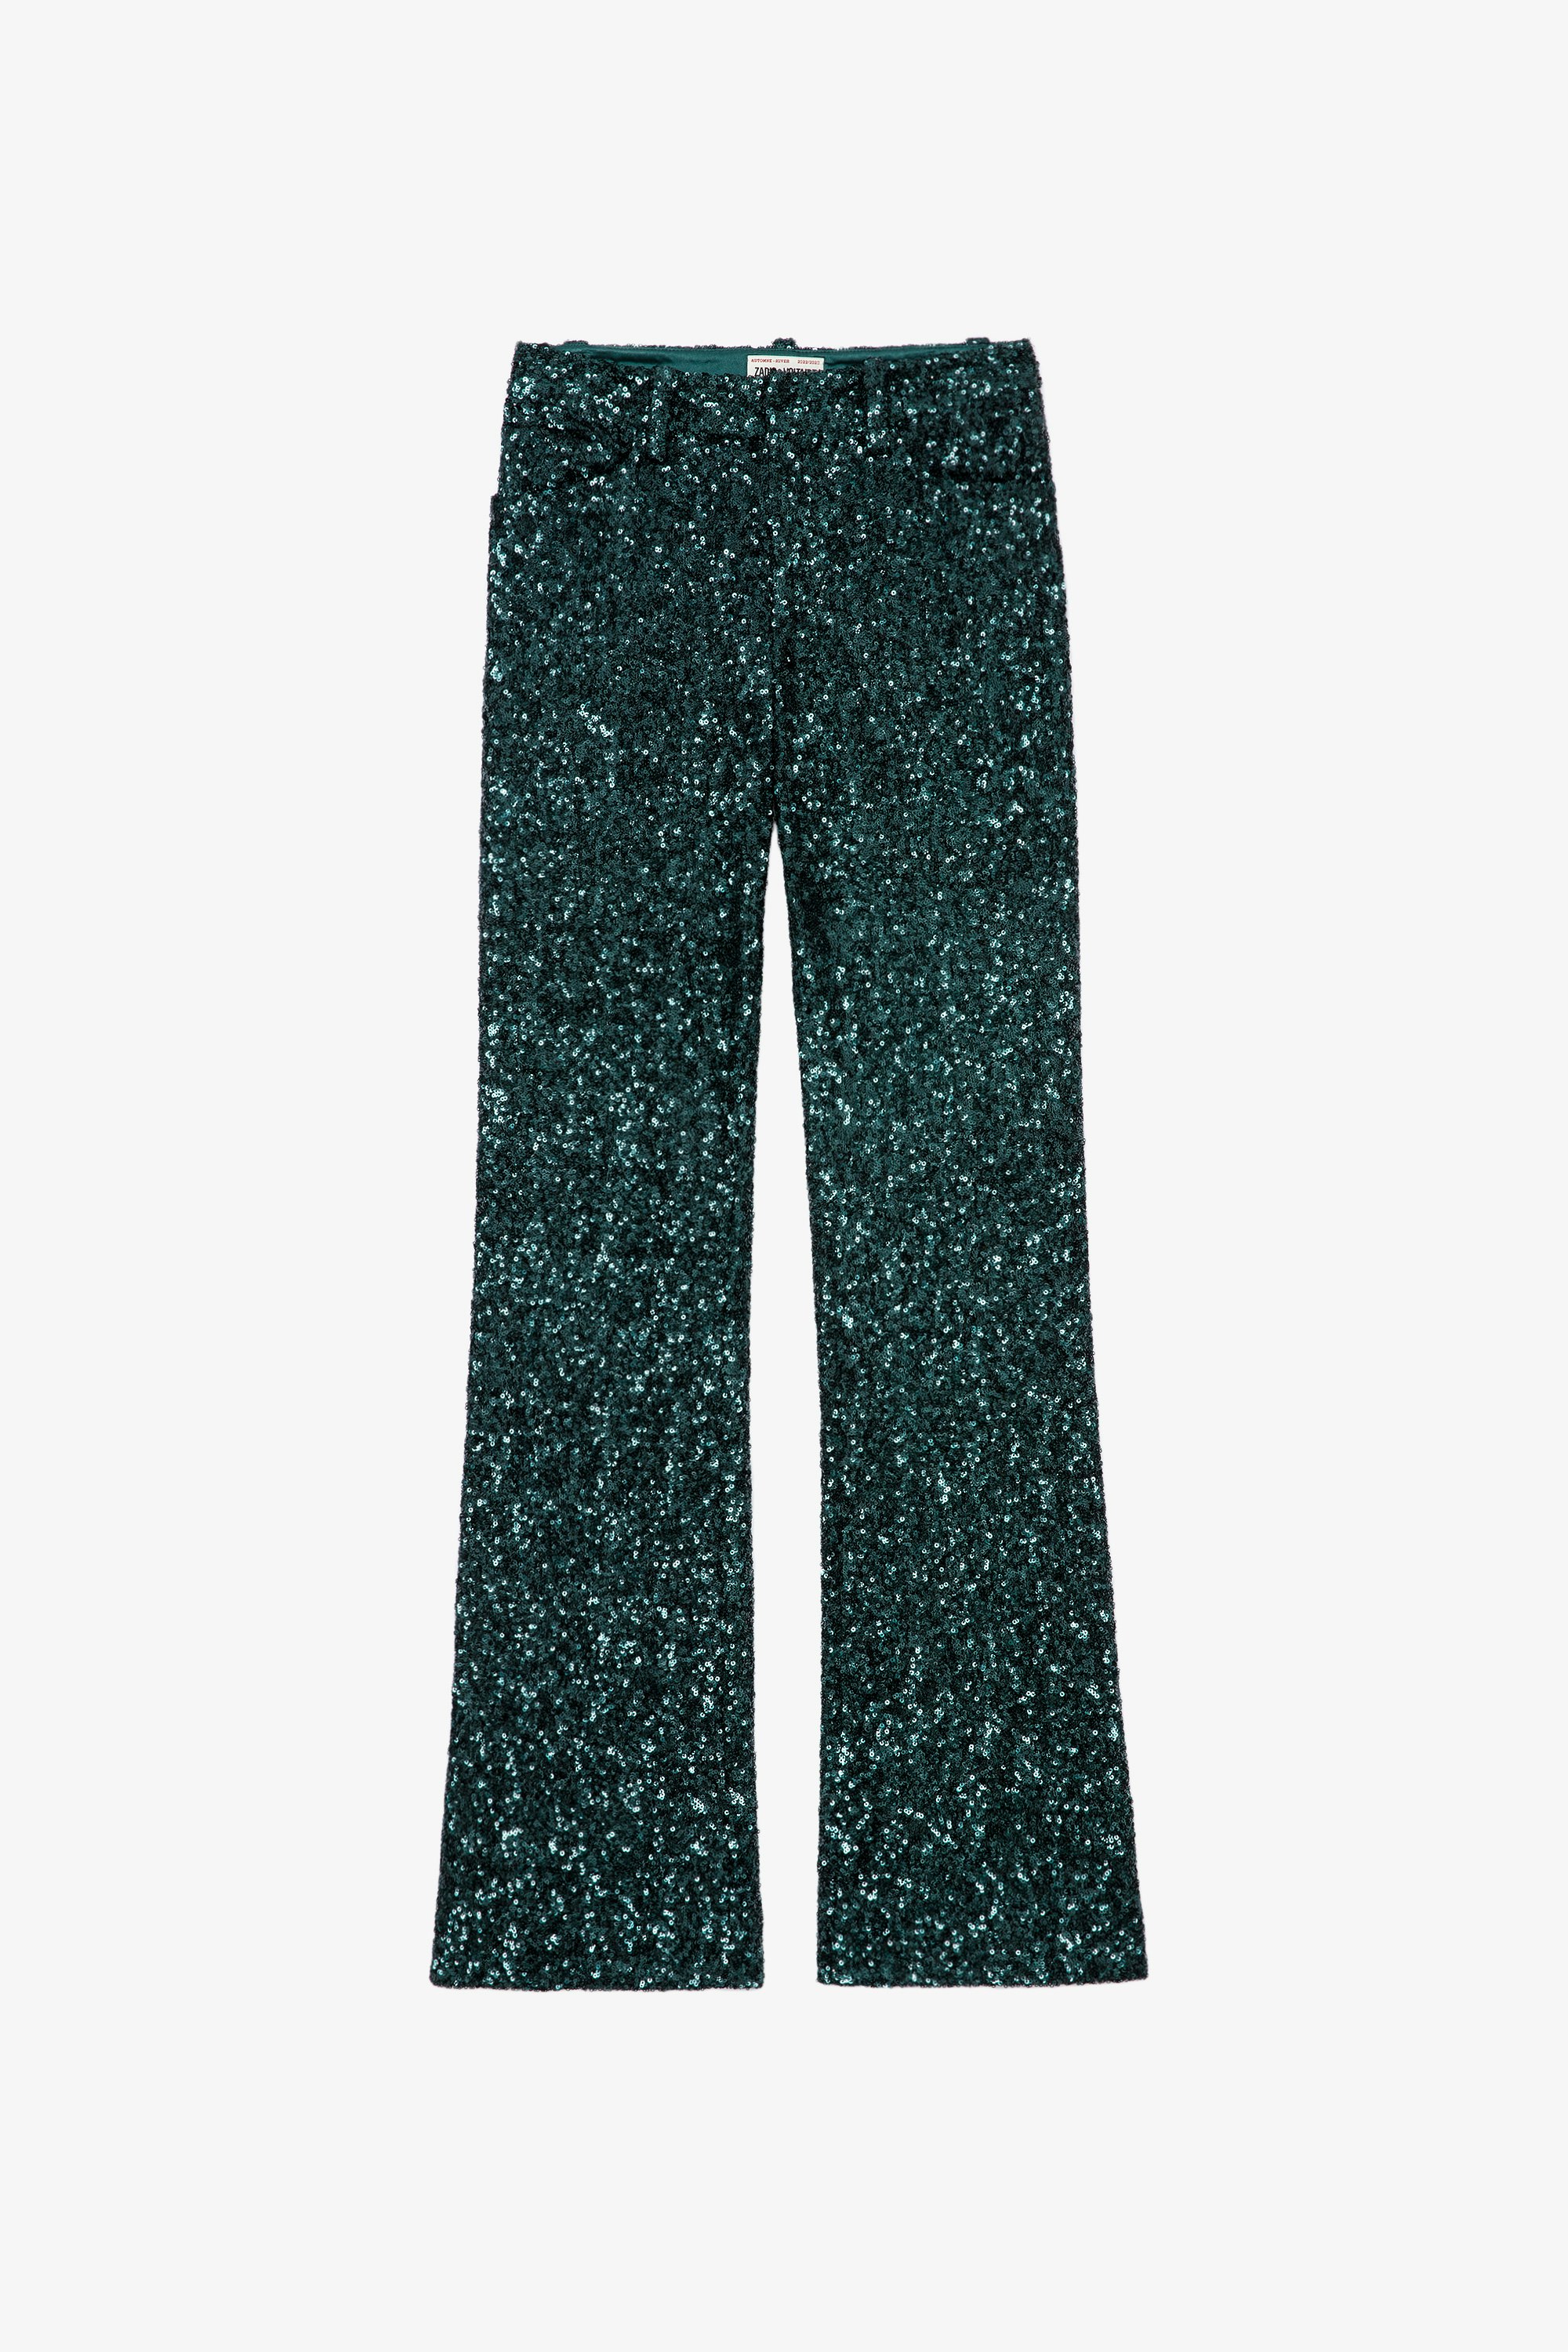 Pantalón Pistol  Pantalón de traje con lentejuelas de color verde por toda su superficie para mujer